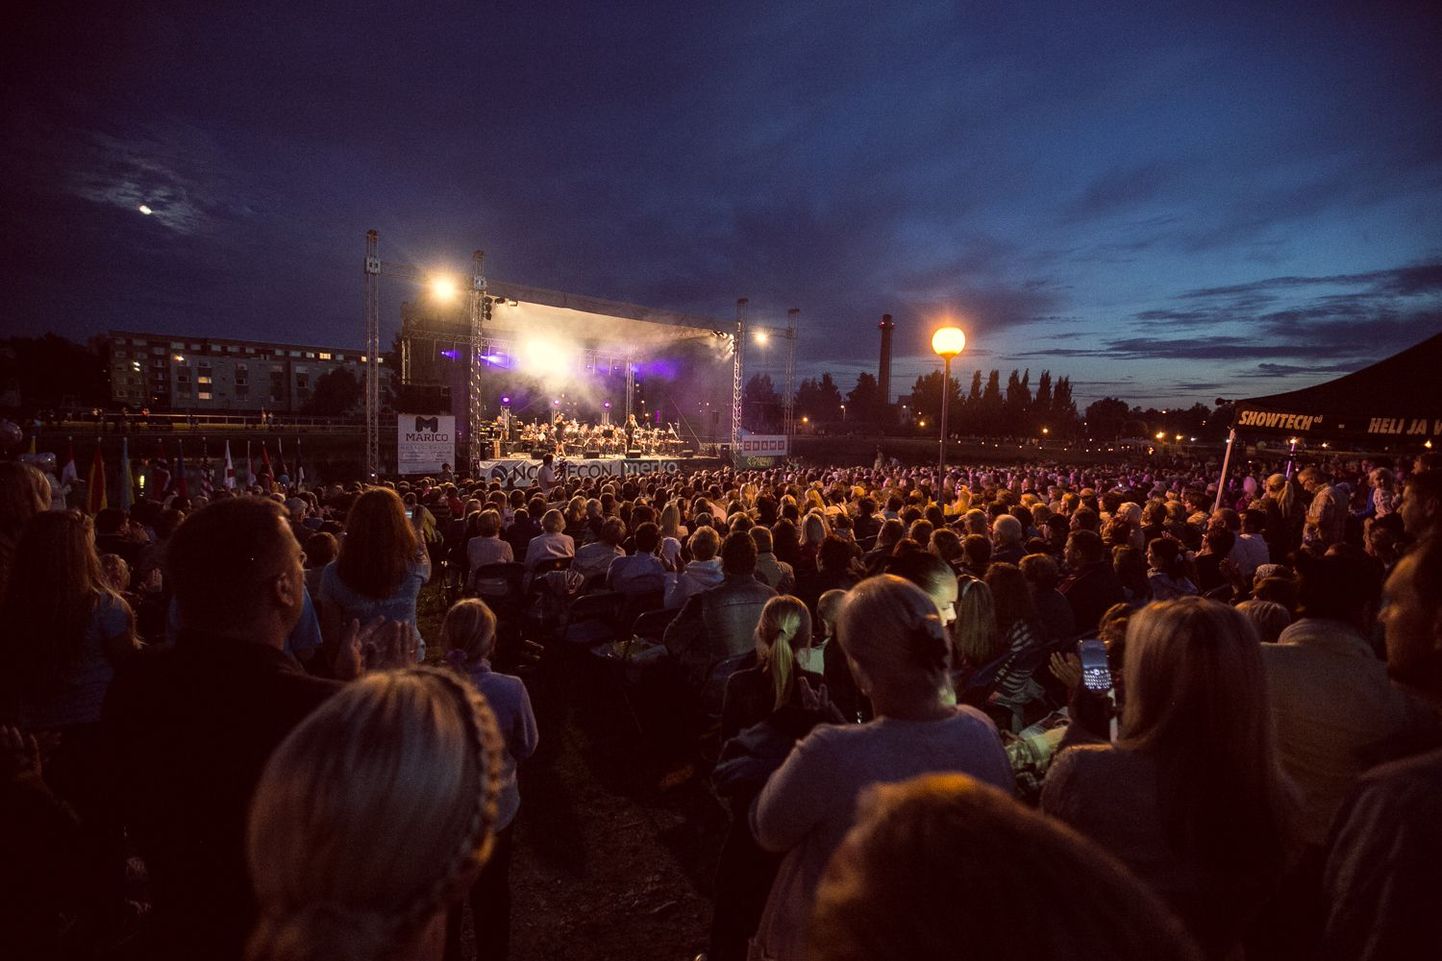 Augustikuised kontserdid Pedeli jõekäärus on toonud Valka esinema tuntud artiste ja kuulama hulgaliselt rahvast. Selleaastane Jõekääru kontsert on arvult juba kolmas.